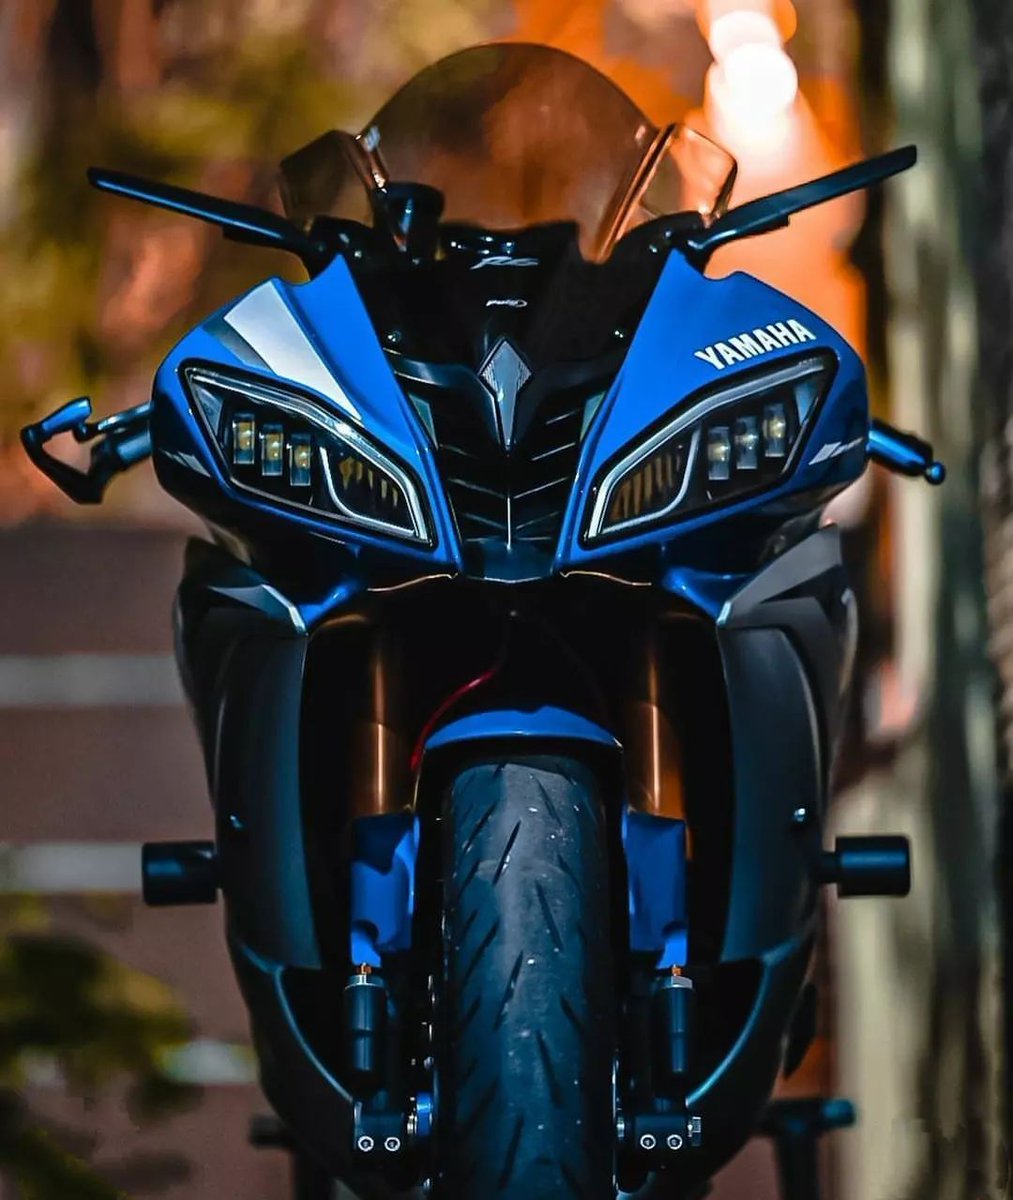 #Yamaha R6